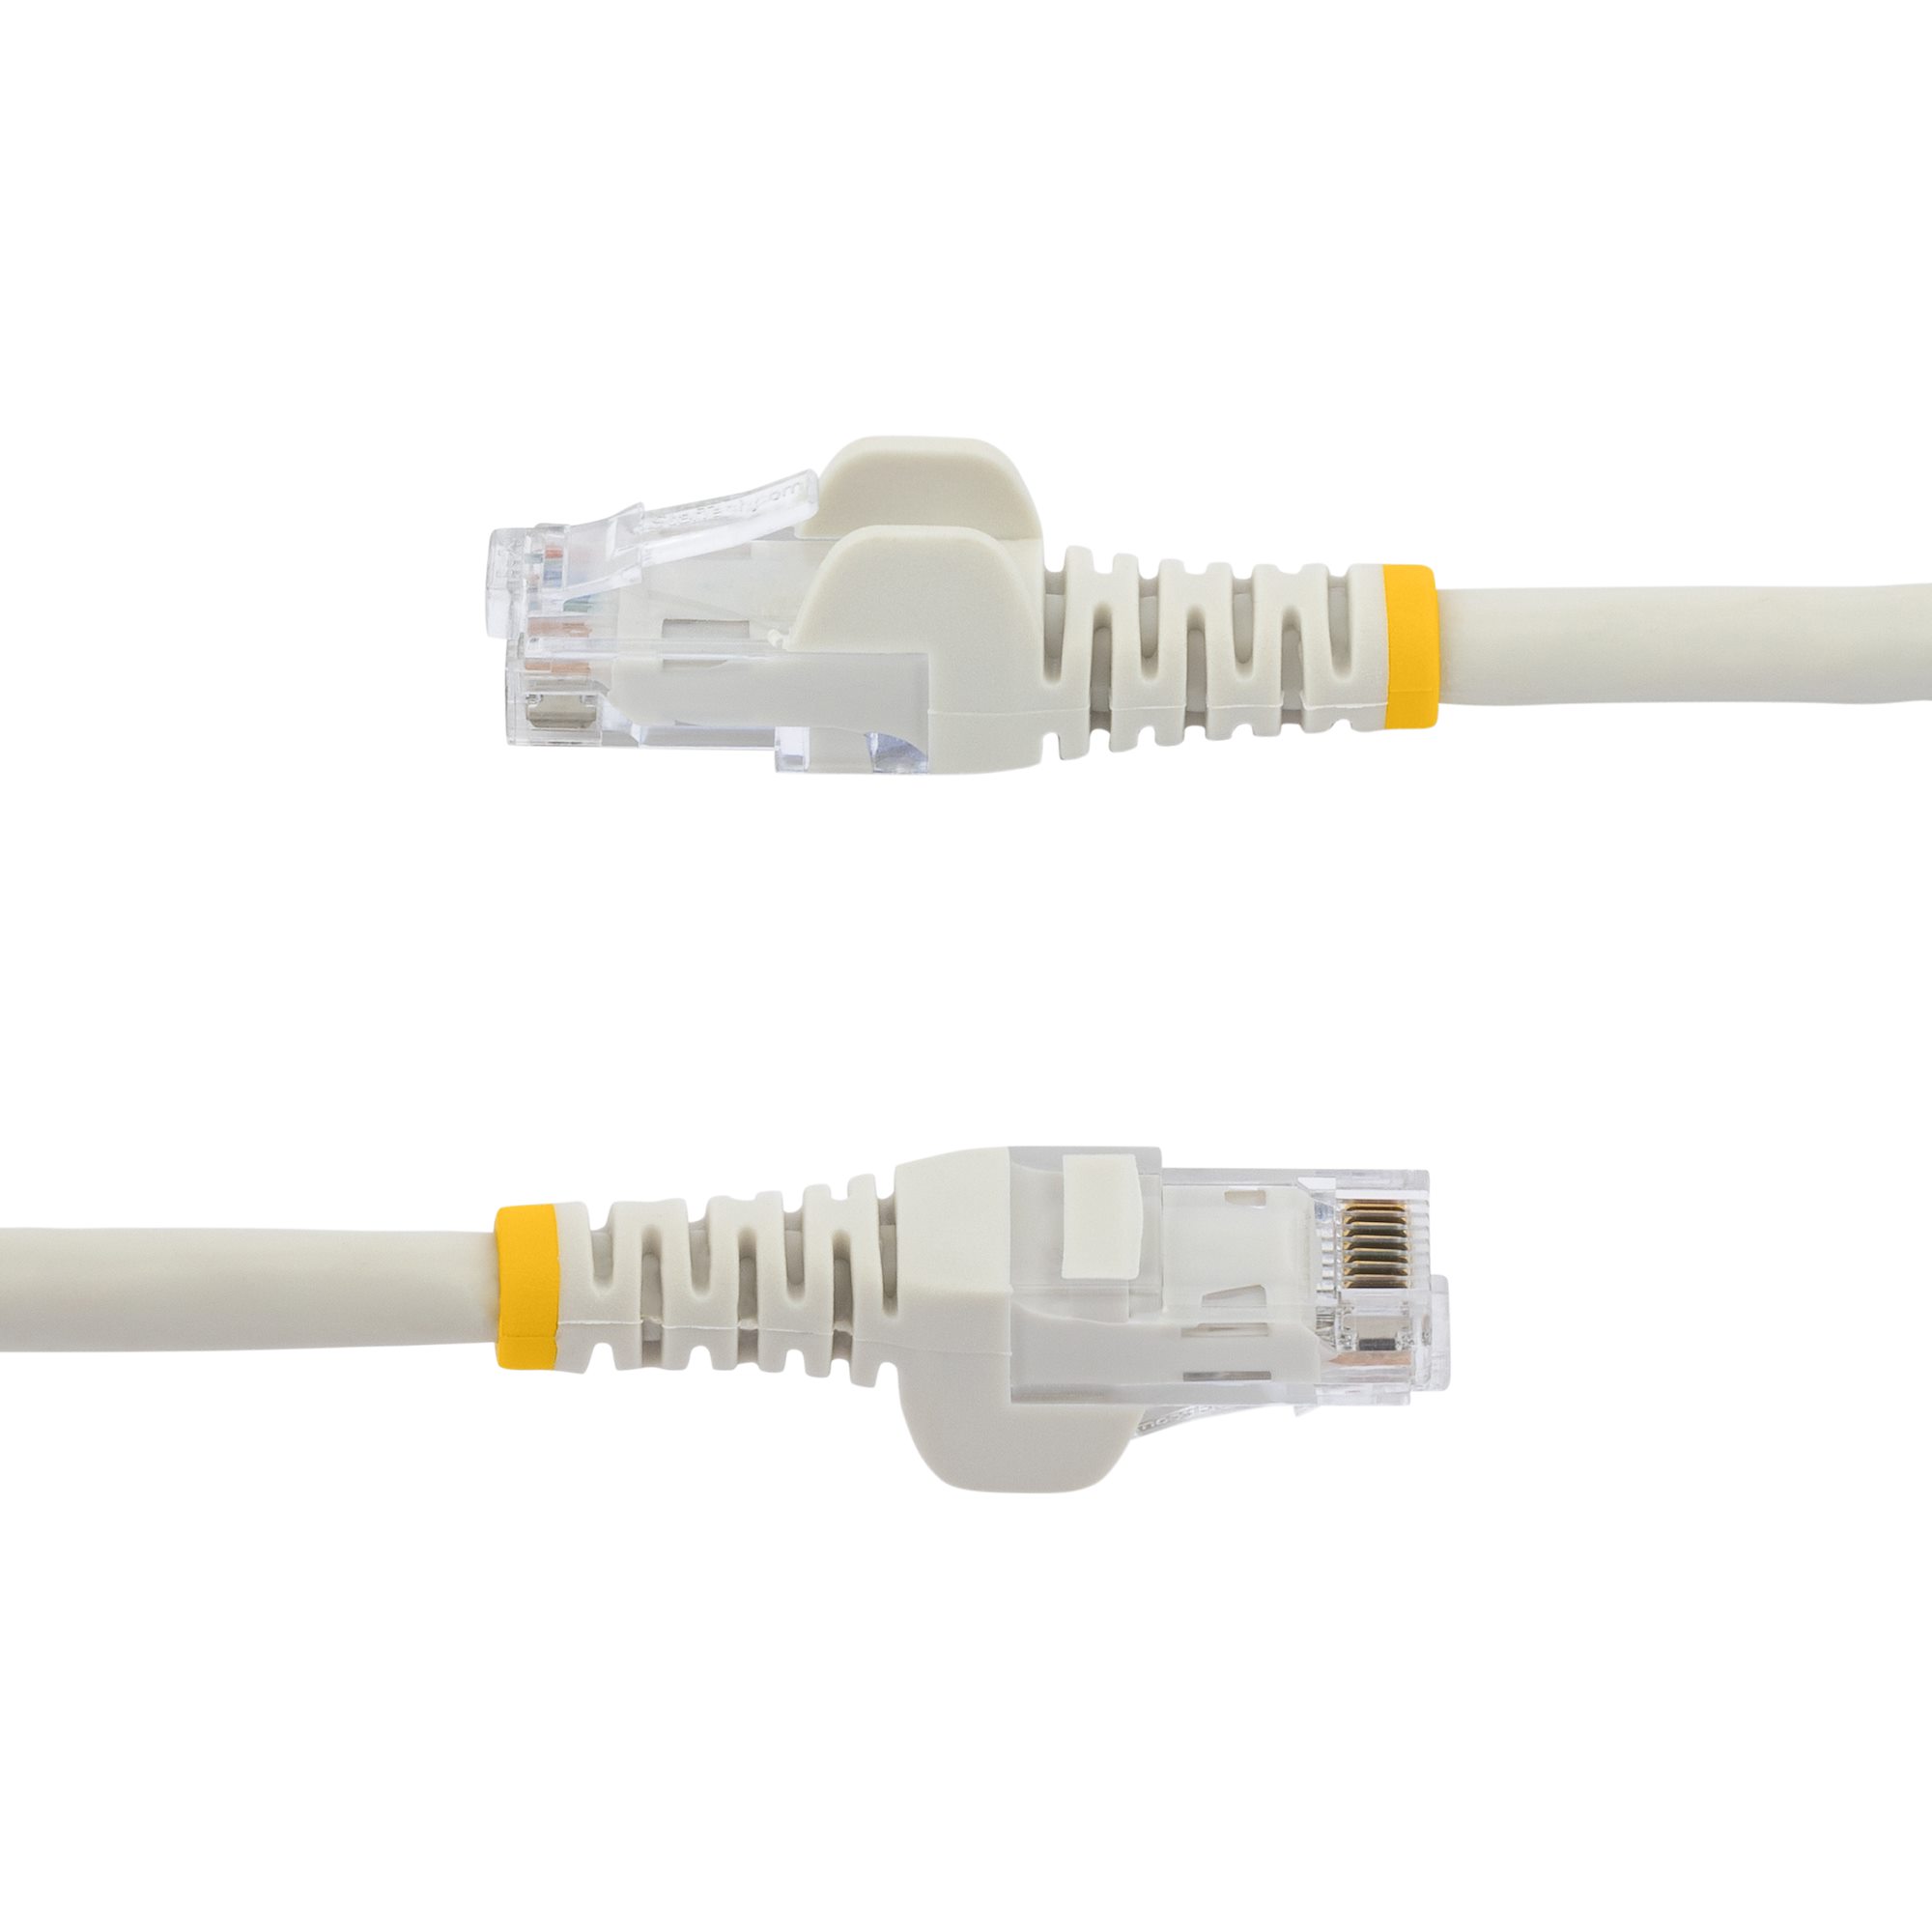 StarTech.com Câble réseau Cat6 Gigabit UTP sans crochet de 15m